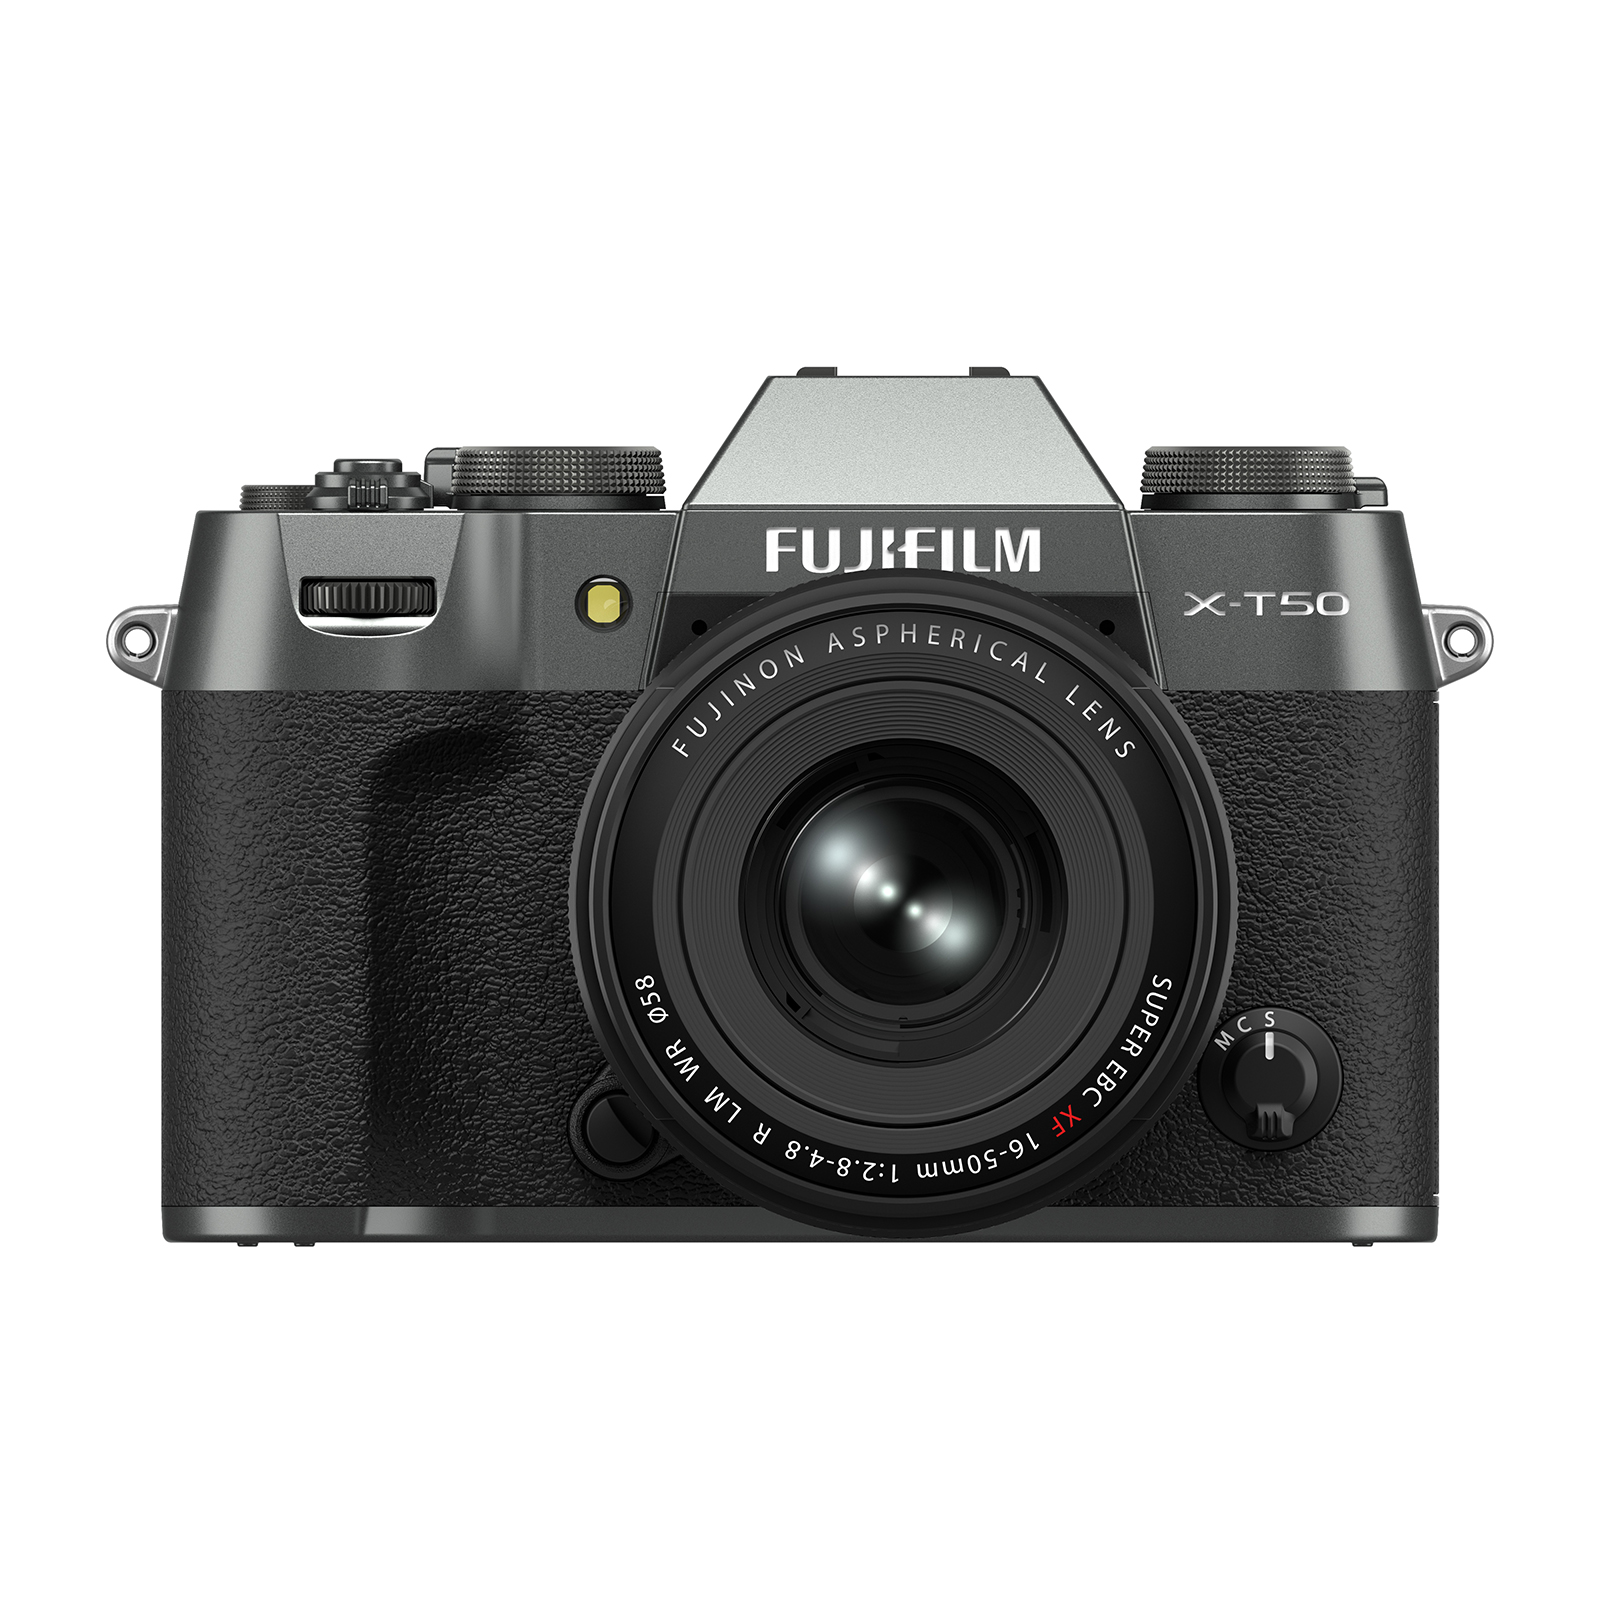 Fujifilm X-T50 Digital Camera Body XF 16-50mm f2.8-4.8 R LM WR Lens - Charcoal